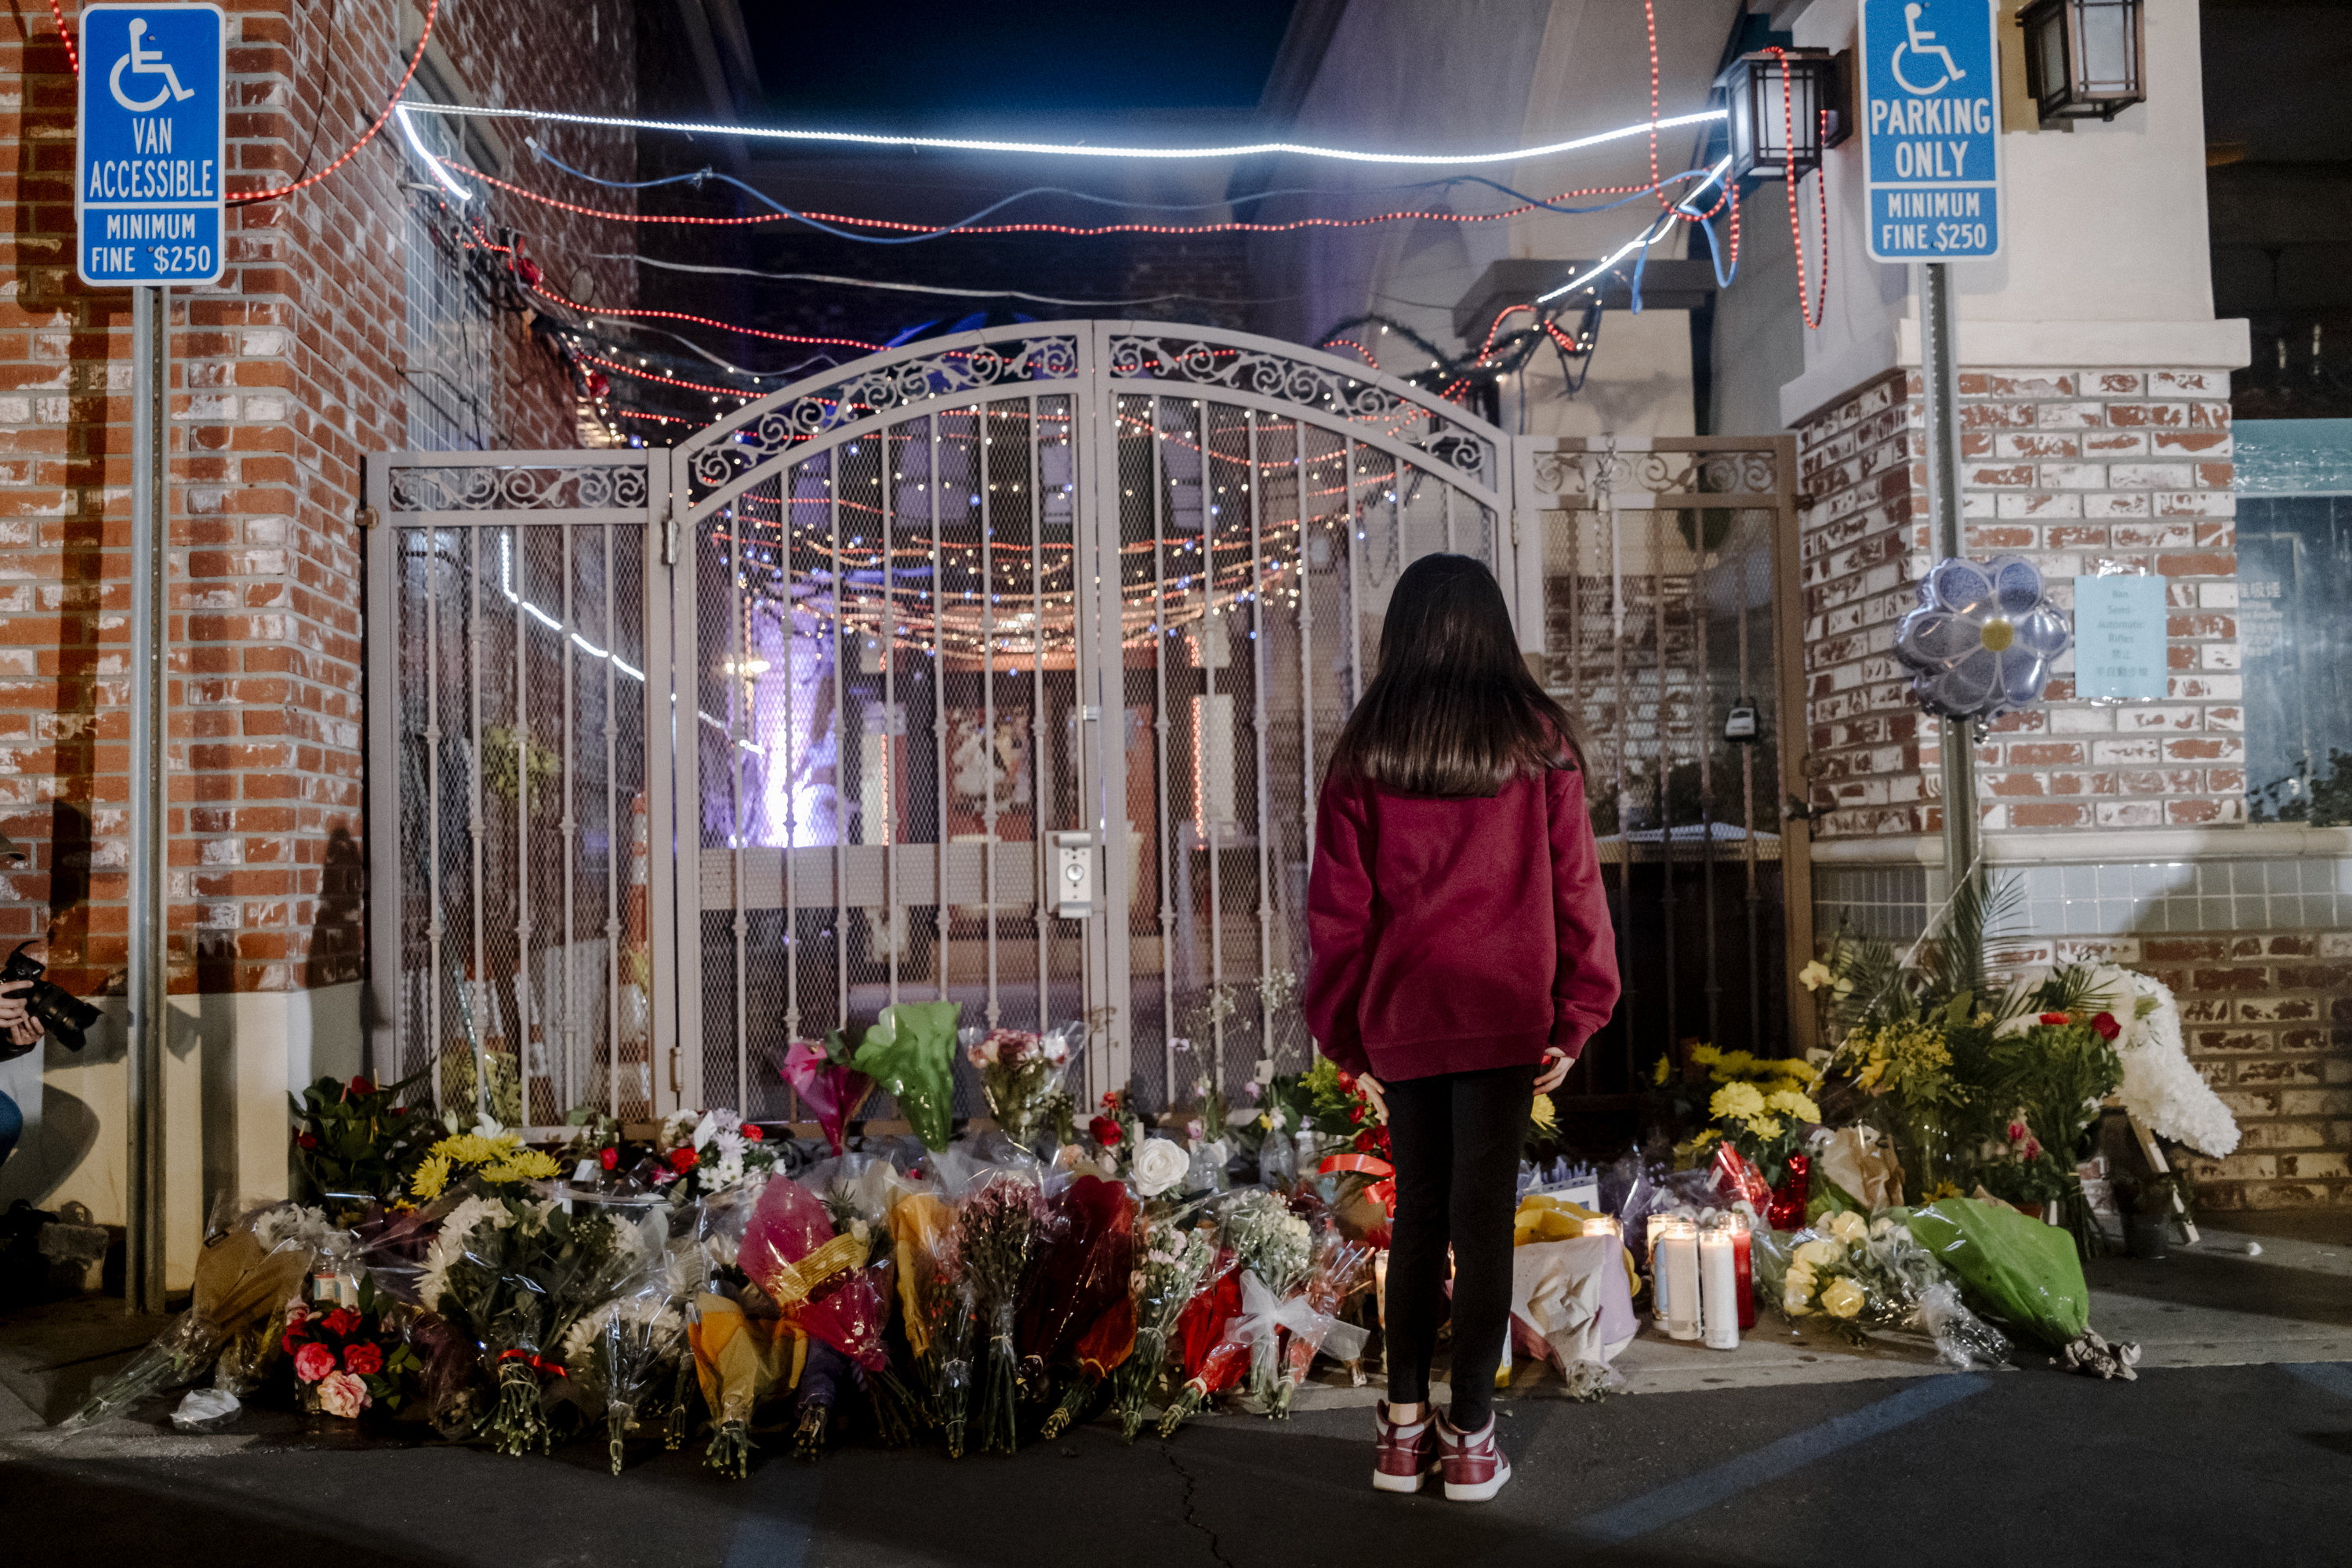 Flores dejadas en una puerta cerca del Star Ballroom Dance Studio, donde 11 personas murieron en un tiroteo masivo, en Monterey Park, California, el lunes 23 de enero de 2023. (Foto Prensa Libre: Mark Abramson/The New York Times)